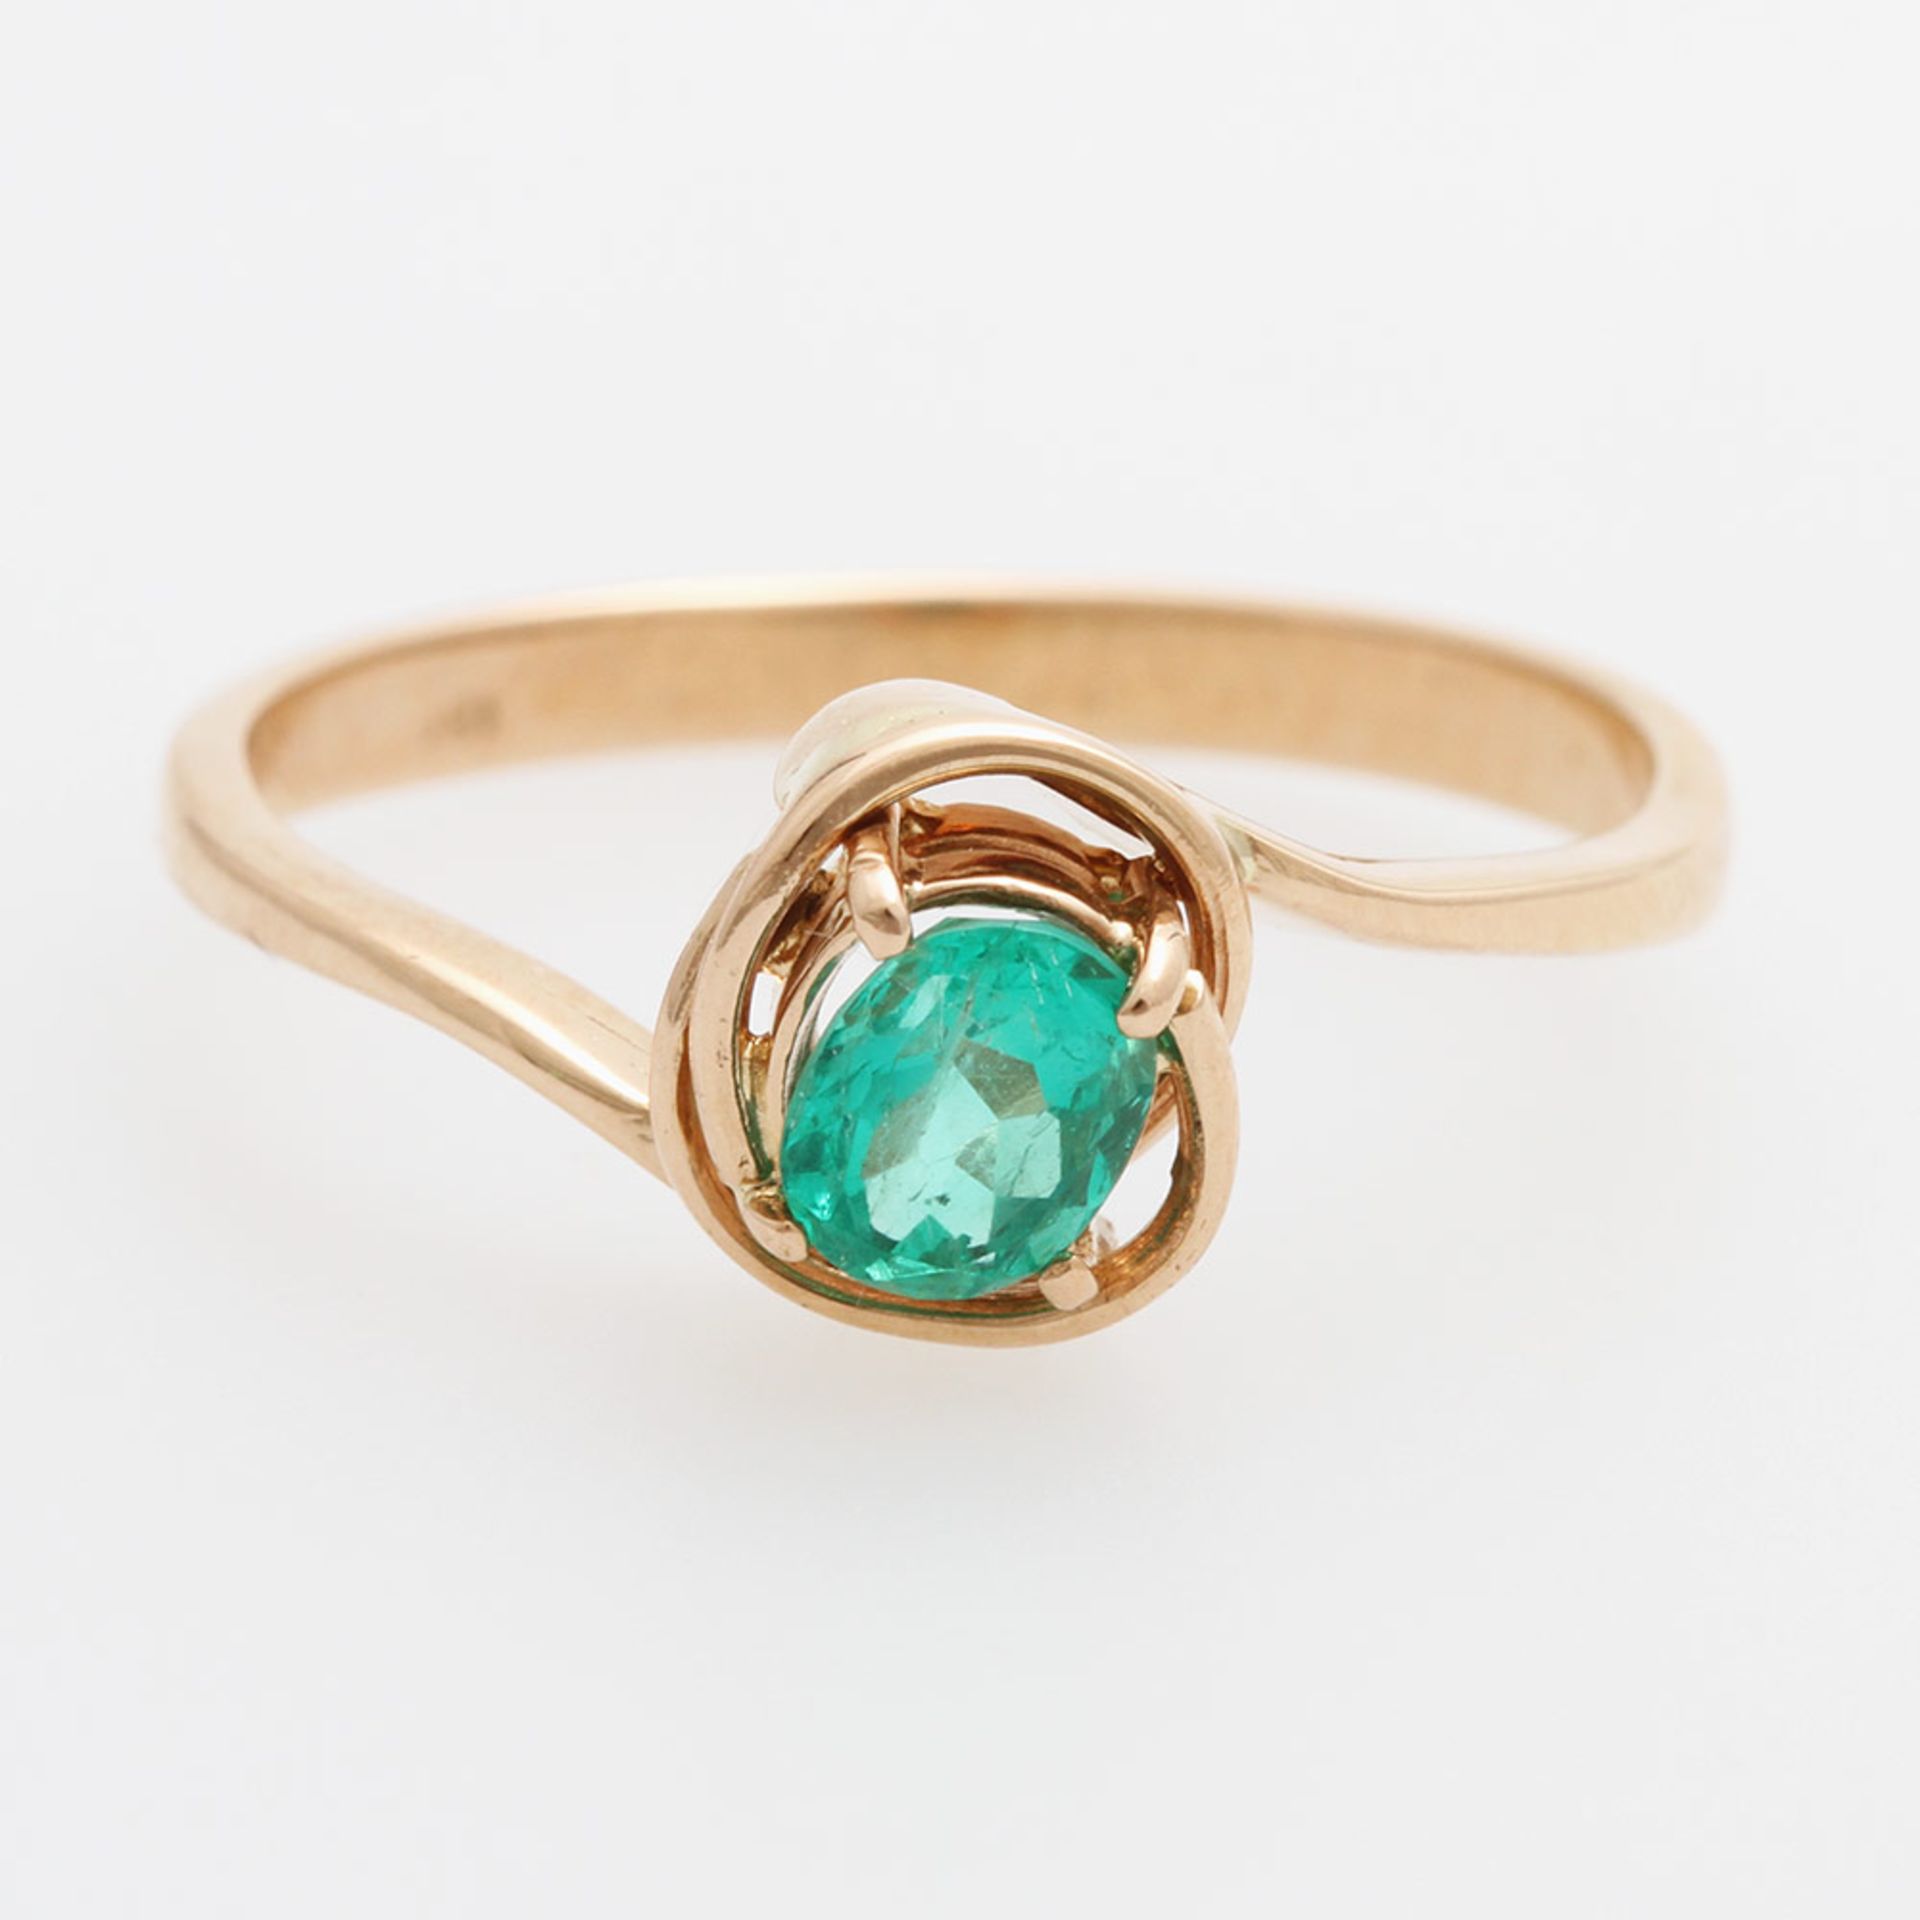 Damenring besetzt mit einem ovalfac. Smaragd in feiner Farbe. RG 18 K. Ringgröße ca. 57,5. (